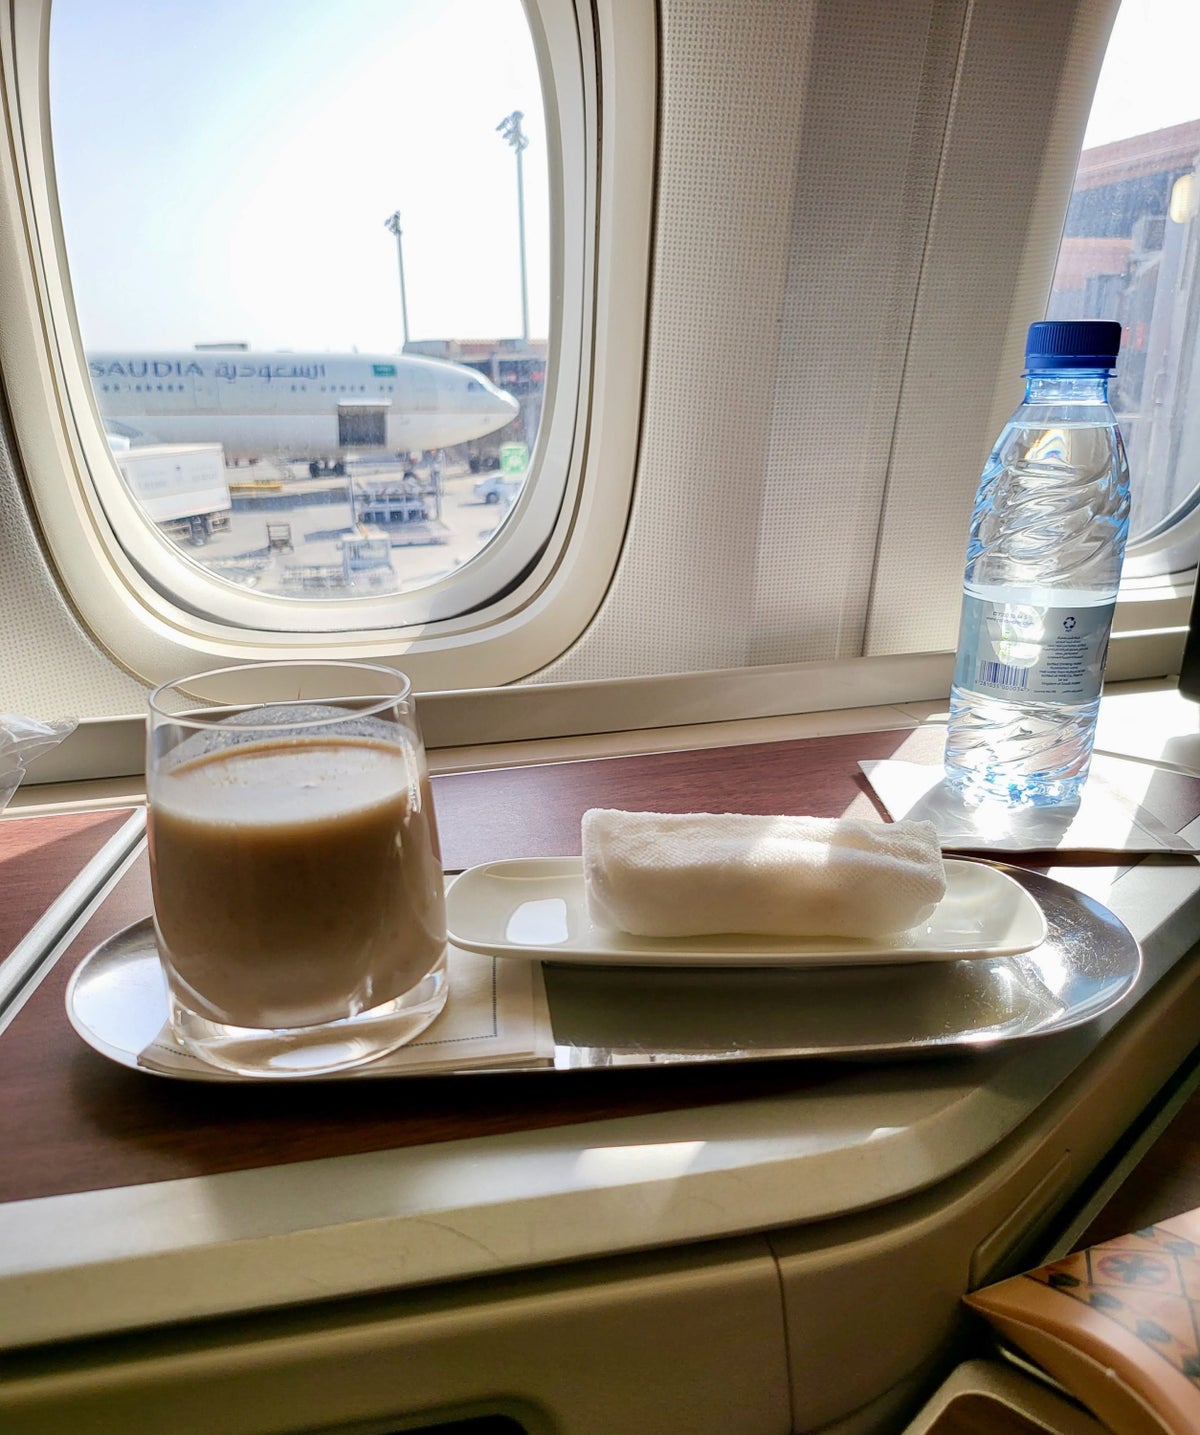 Saudia Airlines date milkshake